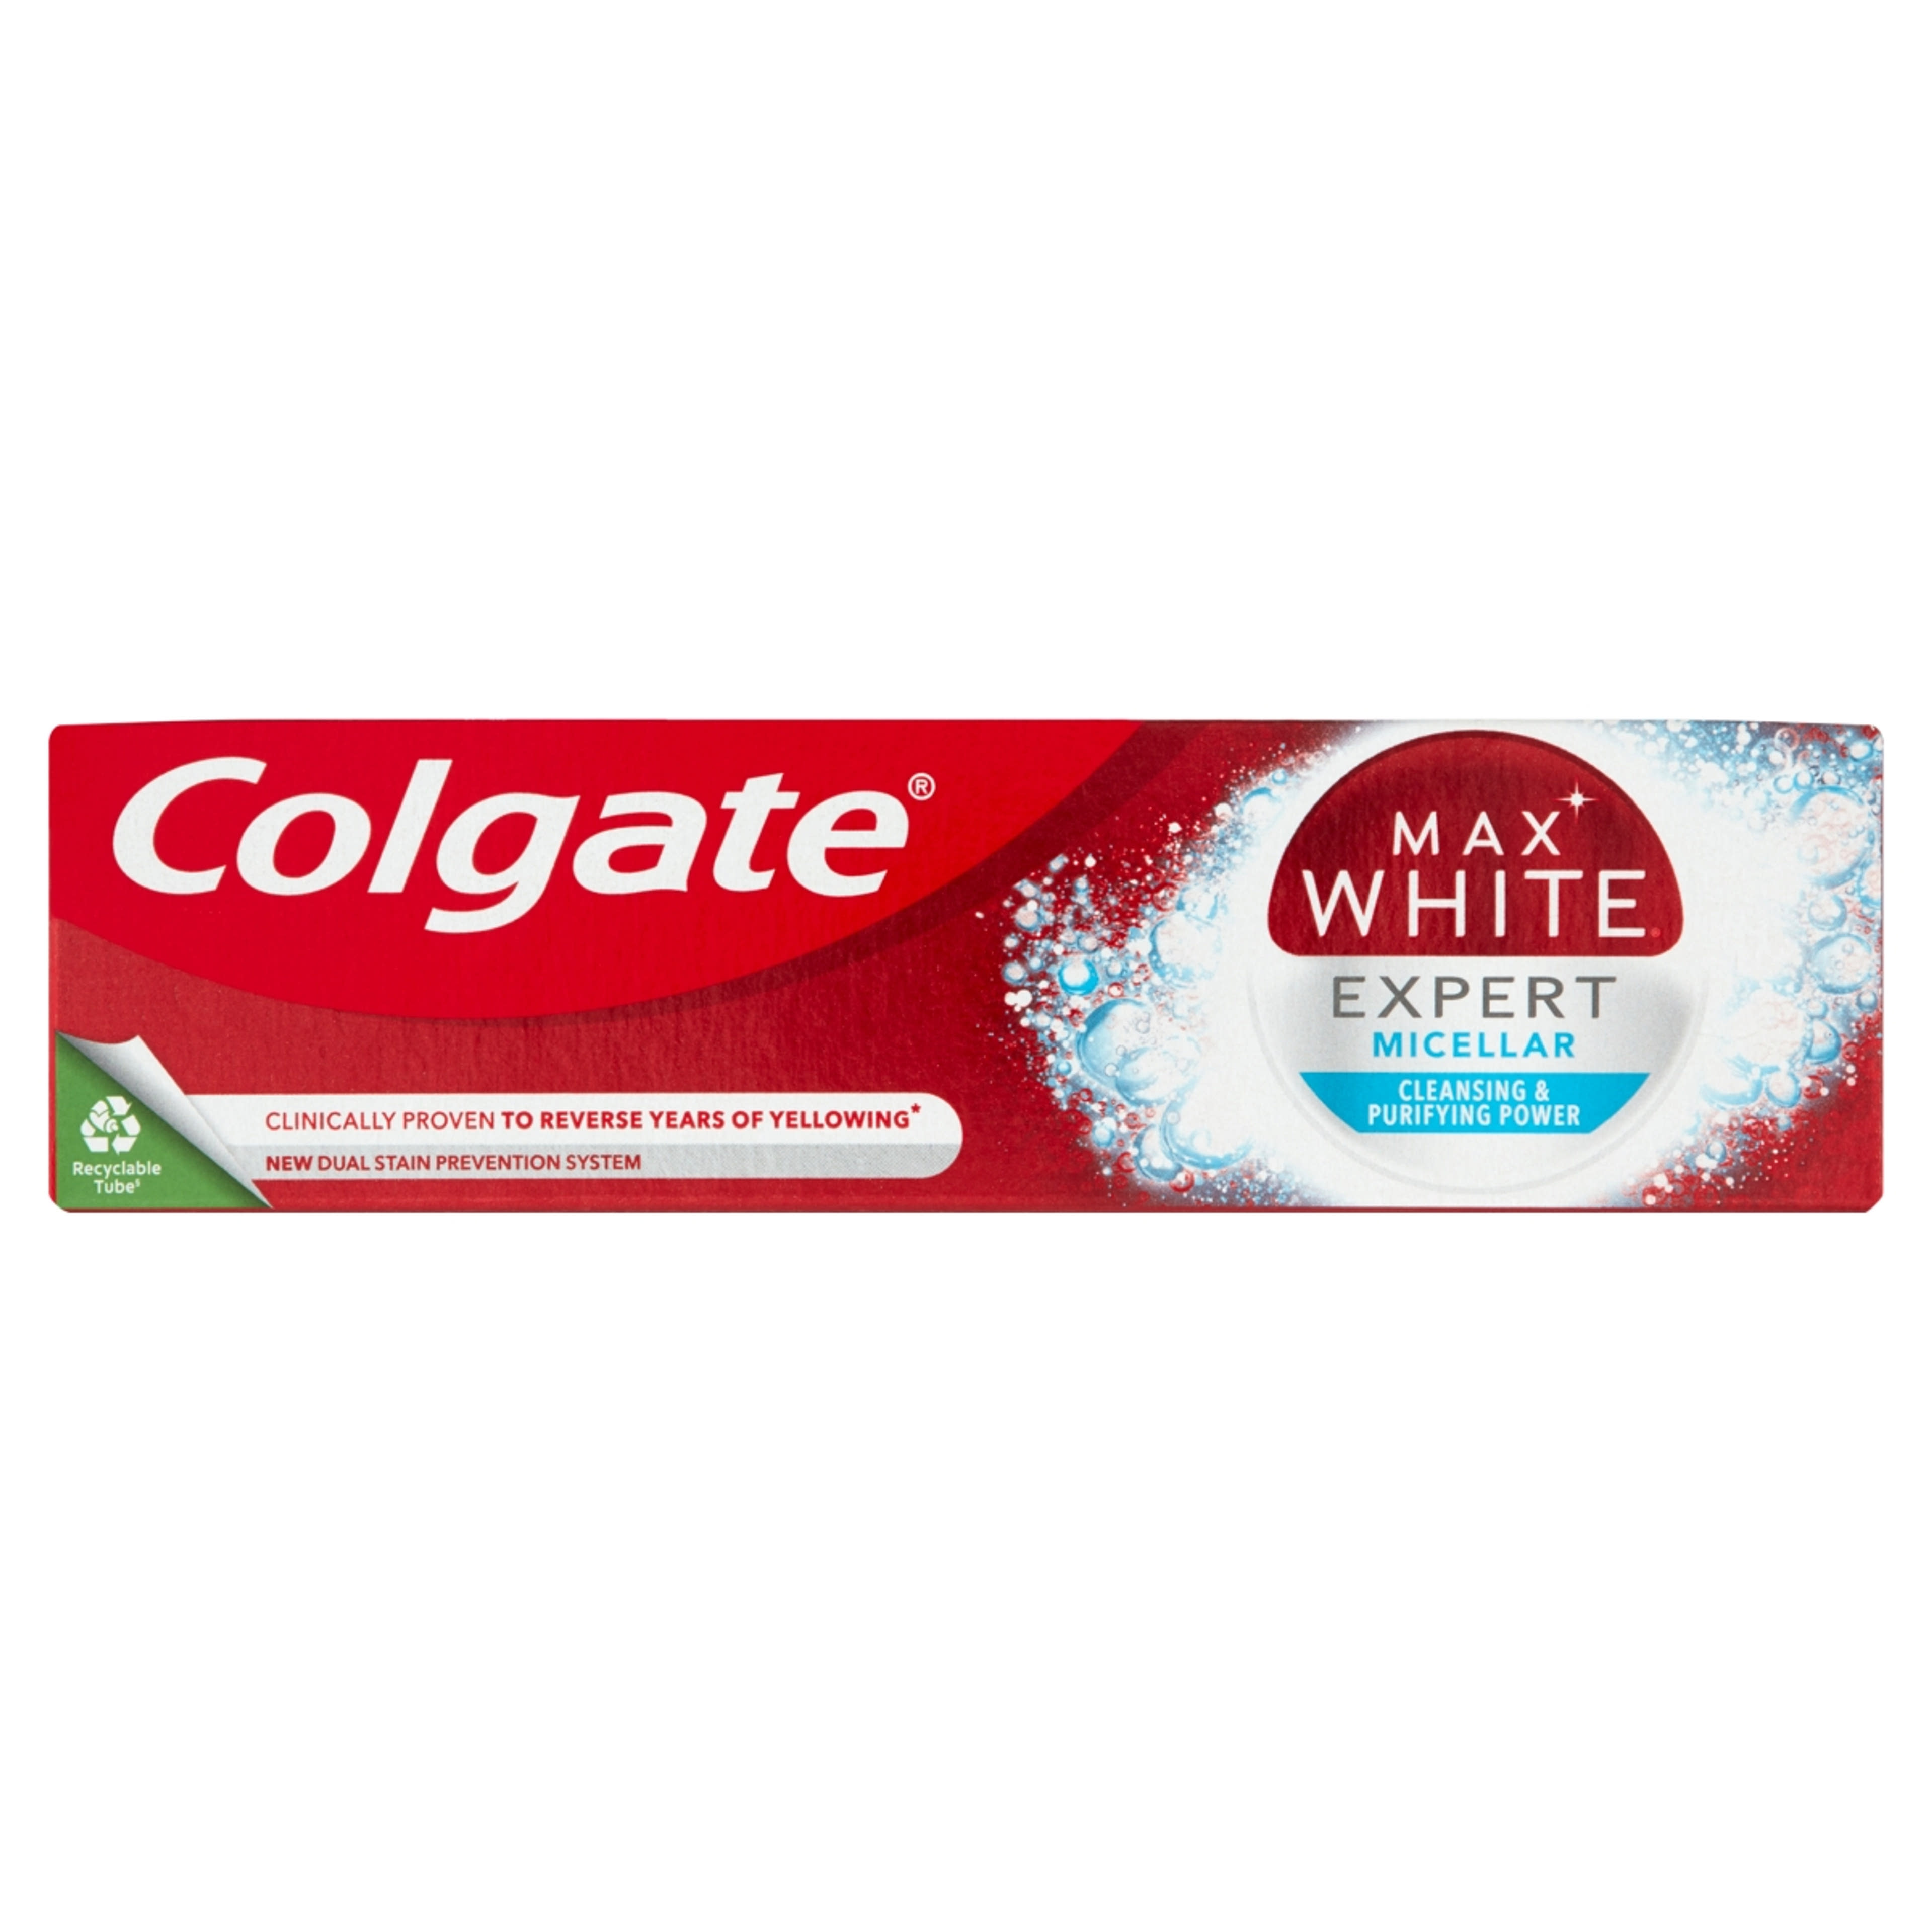 Colgate Max White Expert Micellar fogkrém - 75 ml-1